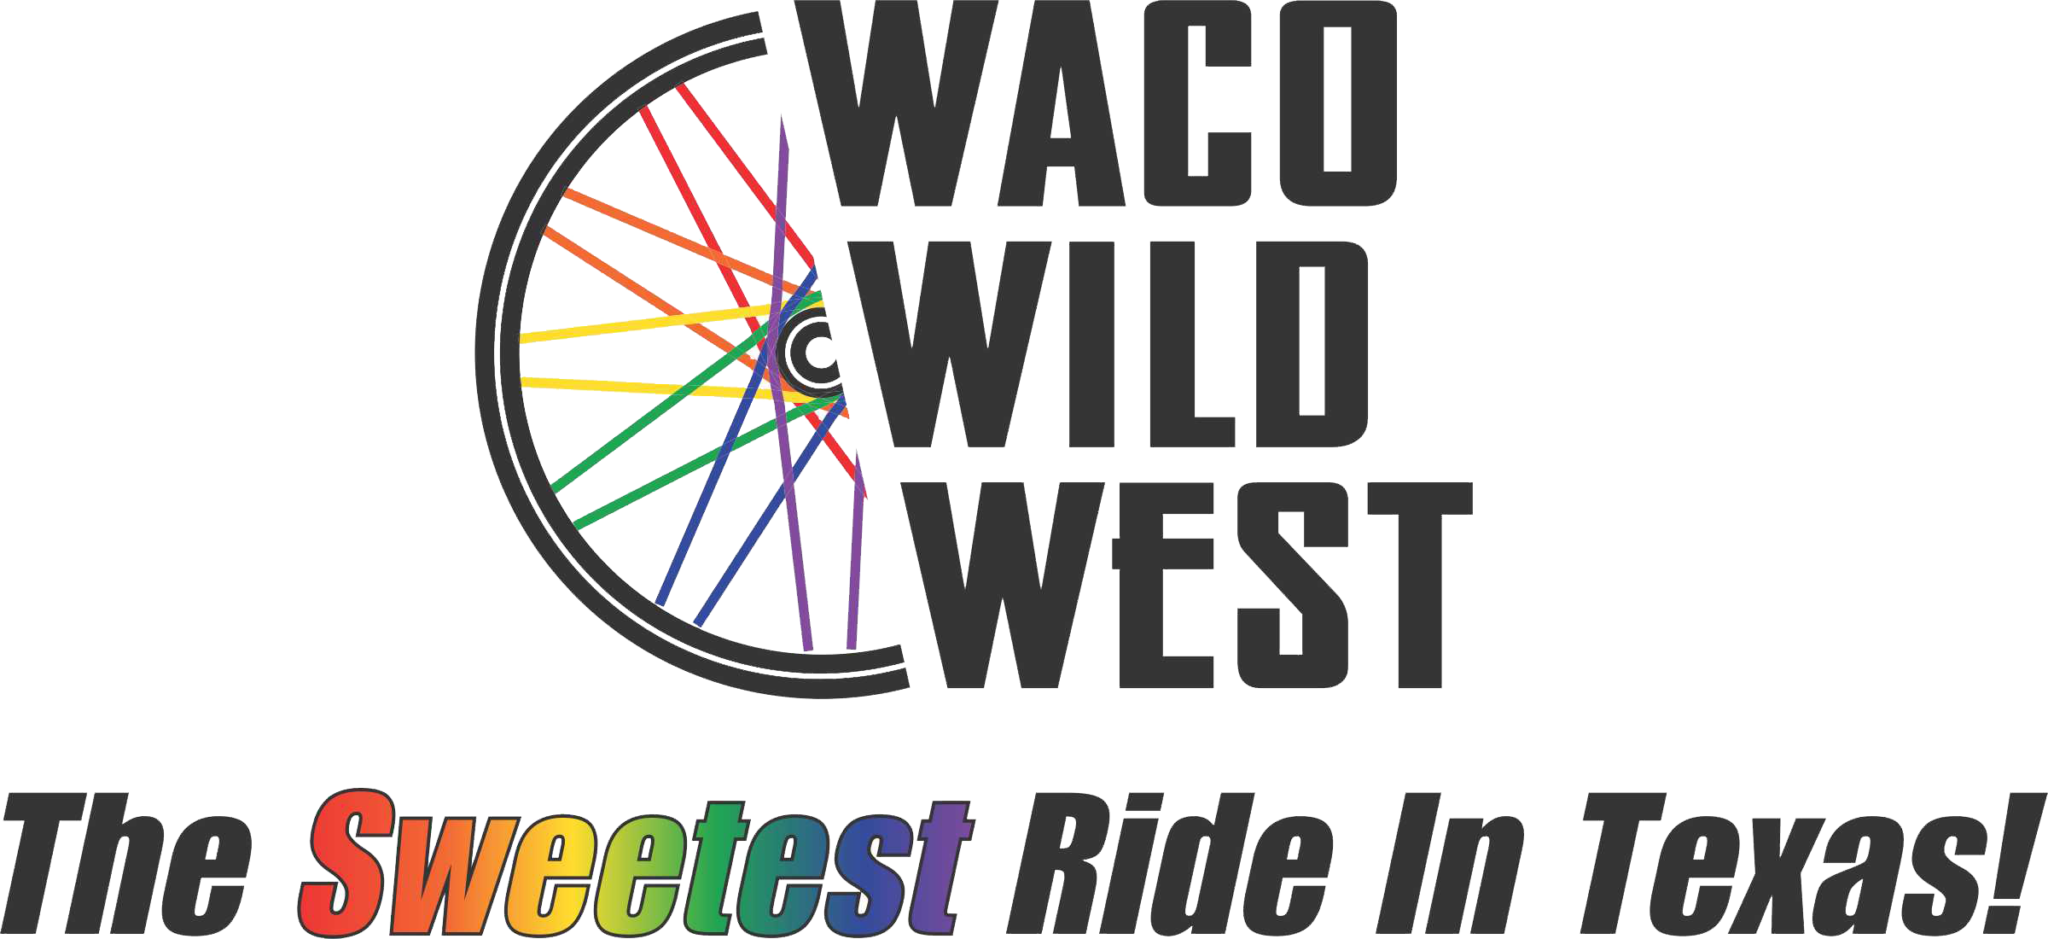 Waco Wild West Bike Tour